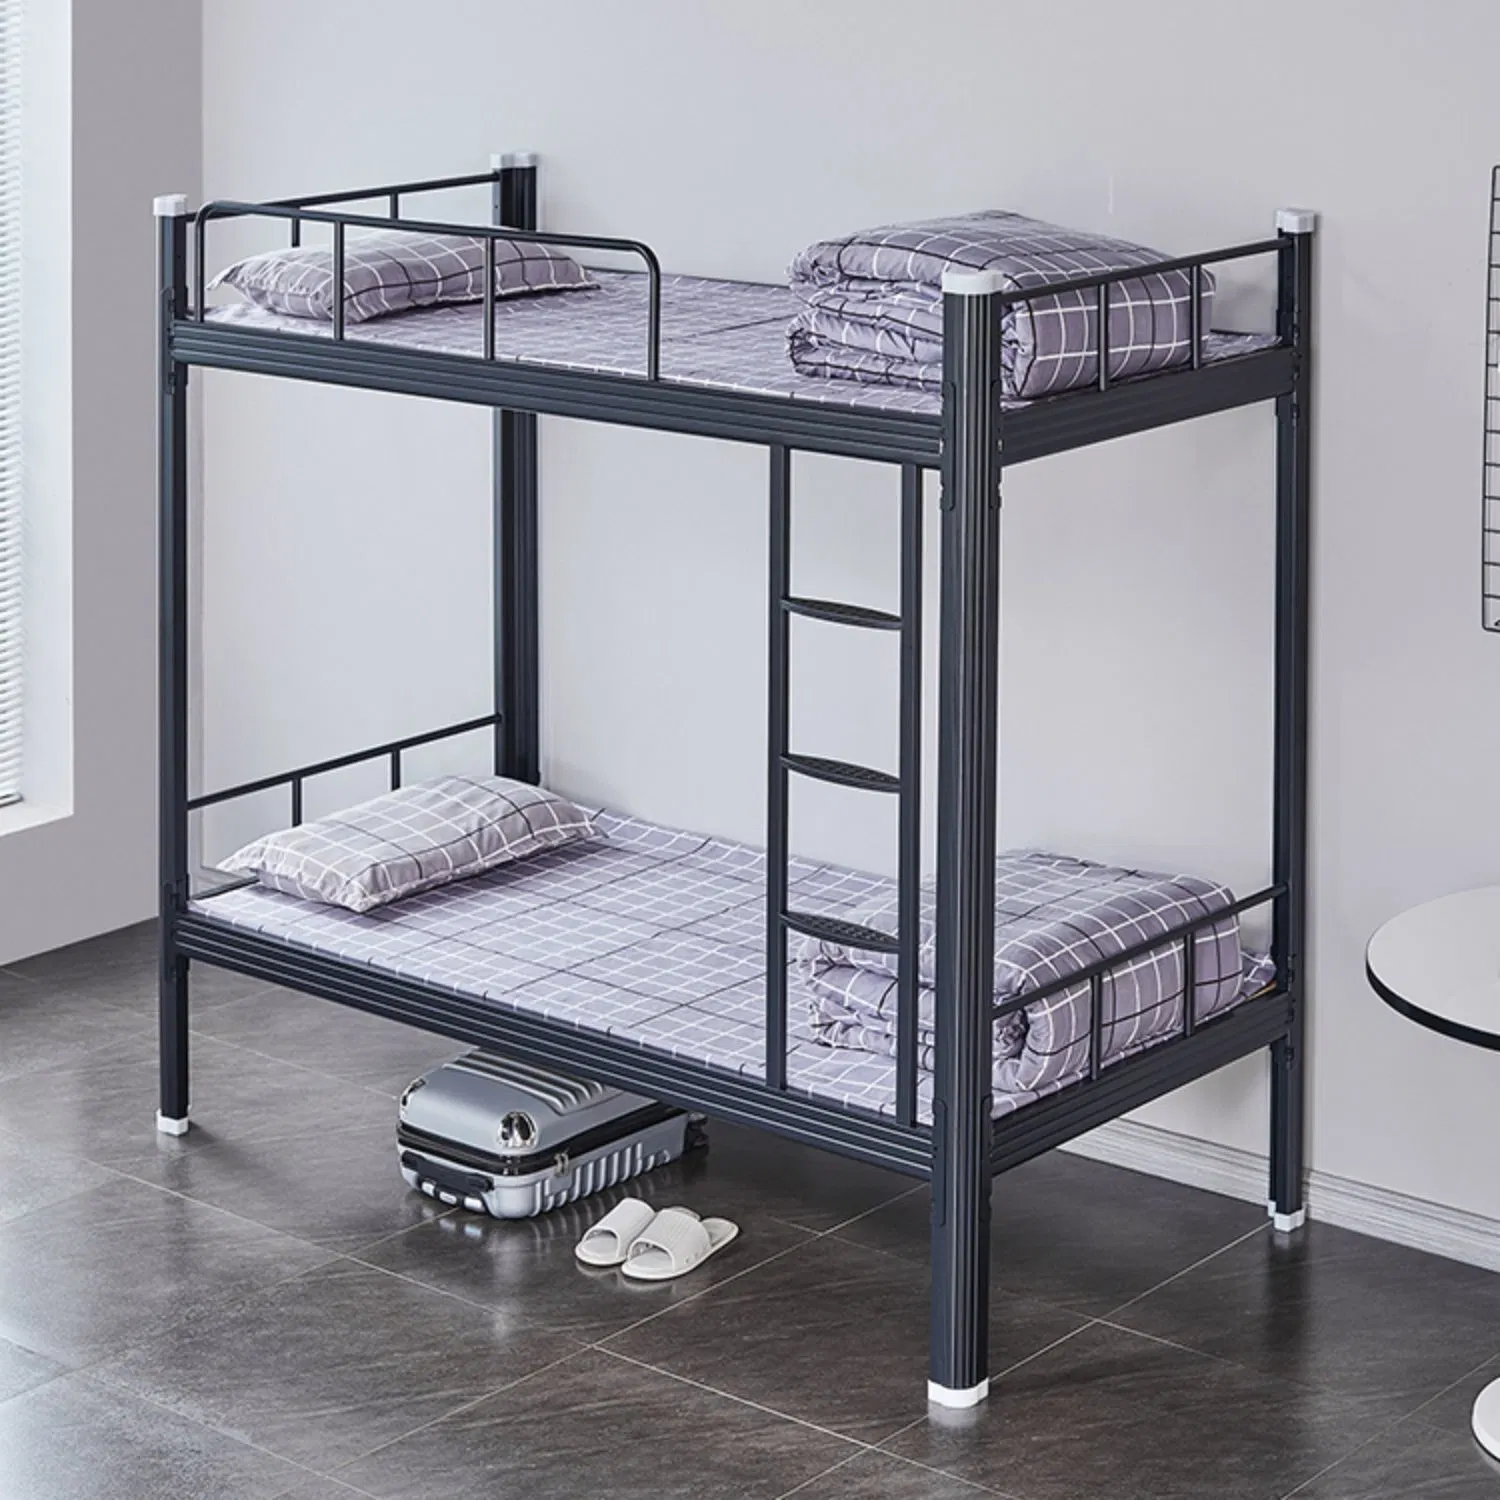 Стальная рама студент утюг двойной кровати в общежитии школы металлической мебели